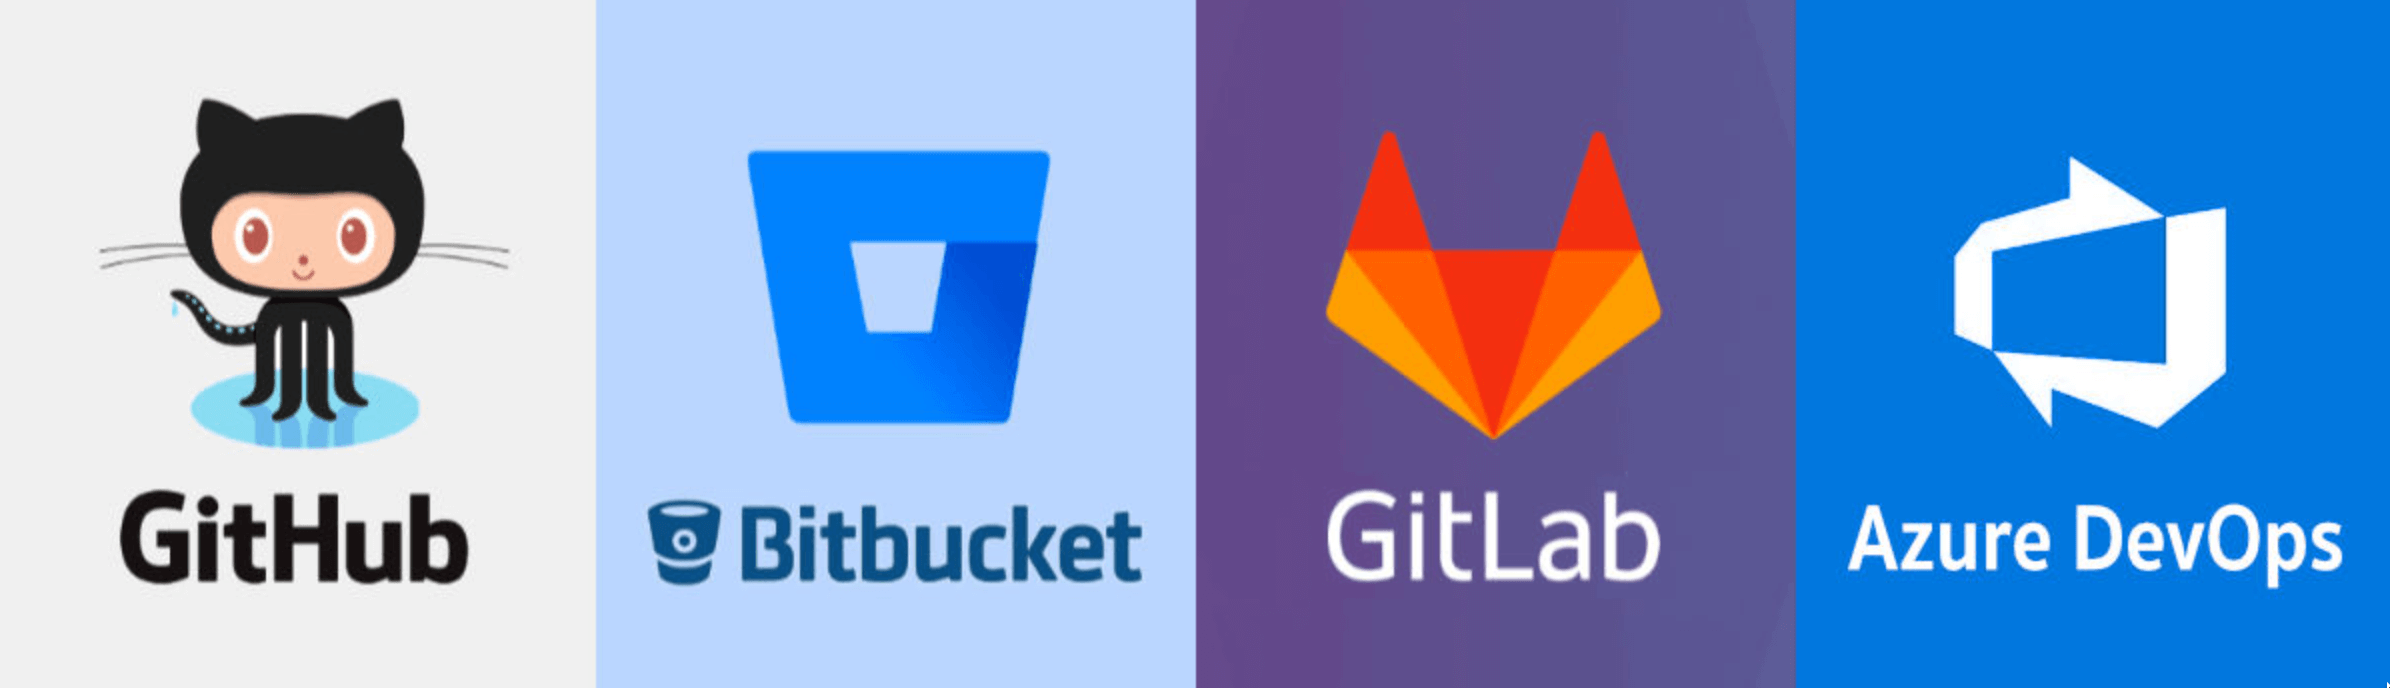 Git Hosting Providers - GitHub, BitBucket, GitLab, Azure DevOps